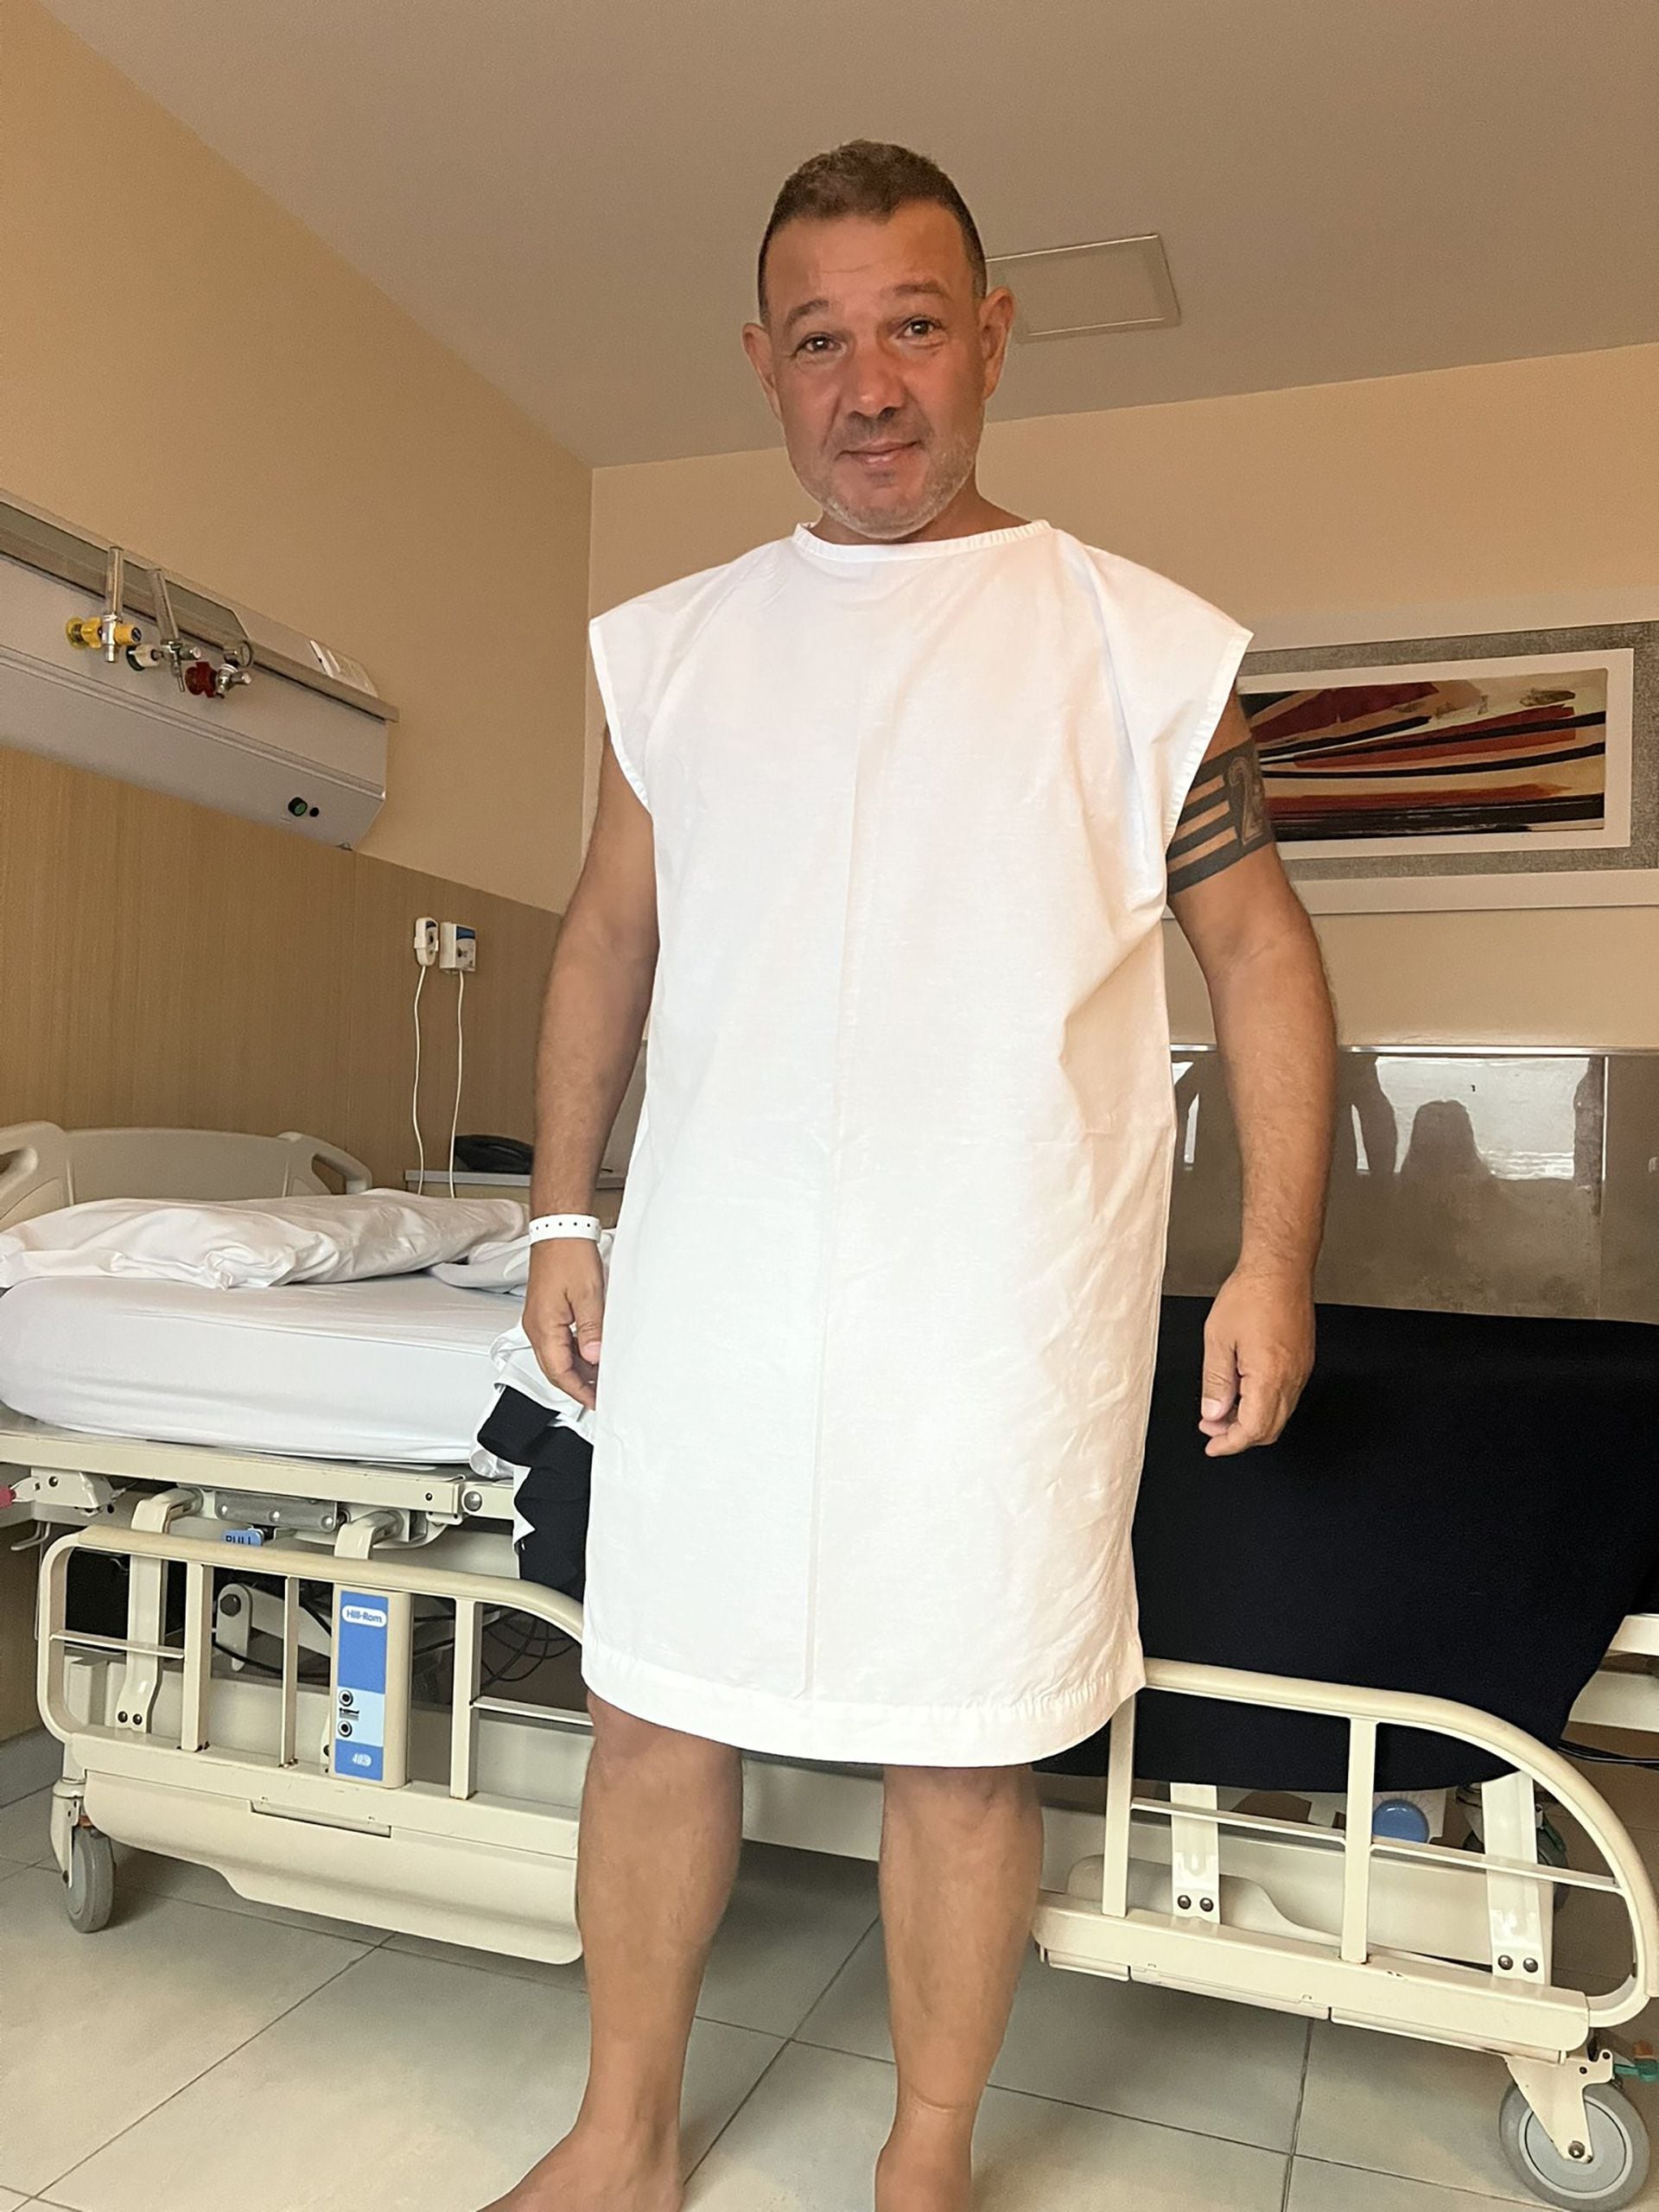 Ciantini afrontó con gran entereza su tratamiento para superar el cáncer de páncreas (@JCiantini)